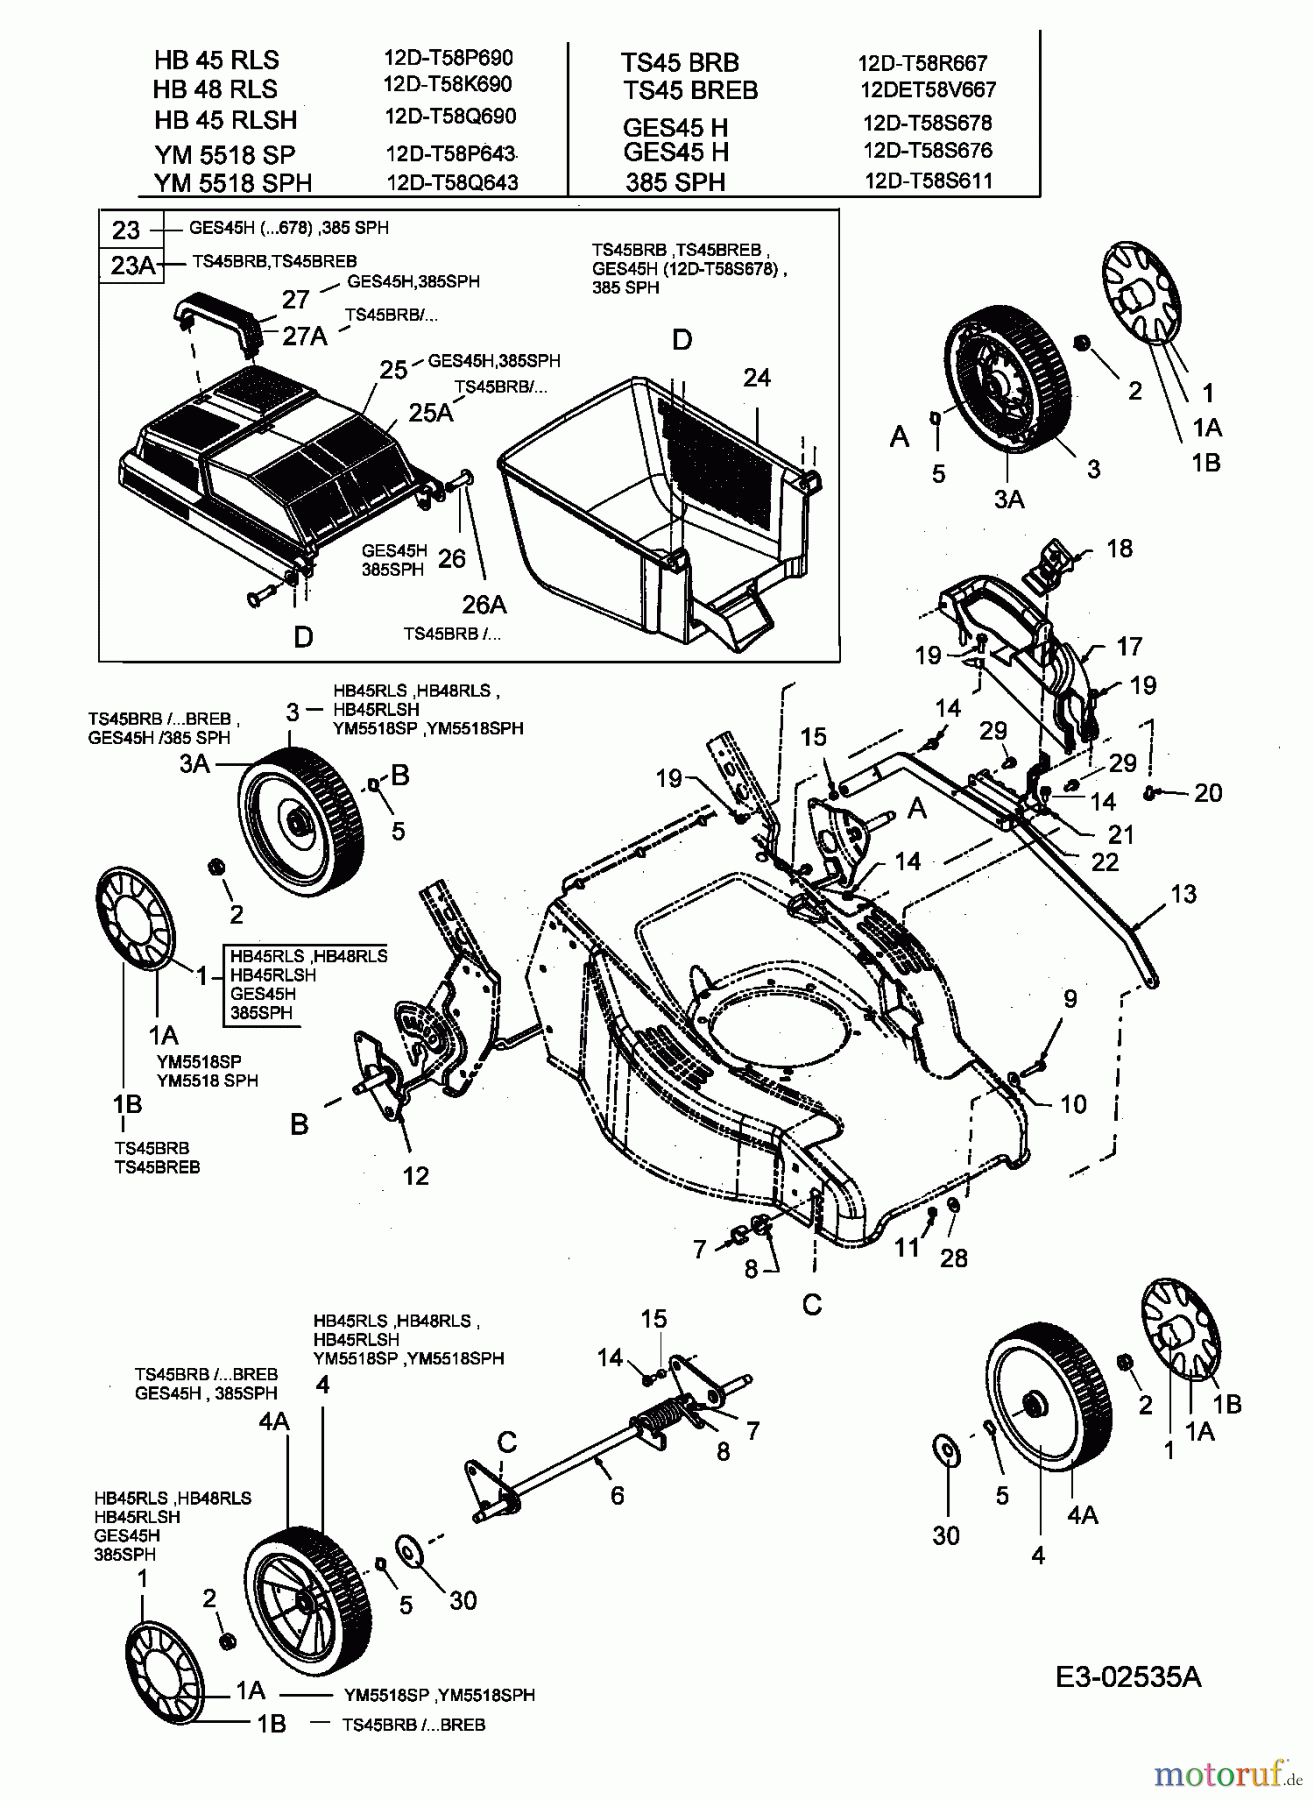  MTD Motormäher mit Antrieb GES 45 H 12D-T58S678  (2005) Grasfangkorb, Räder, Schnitthöhenverstellung